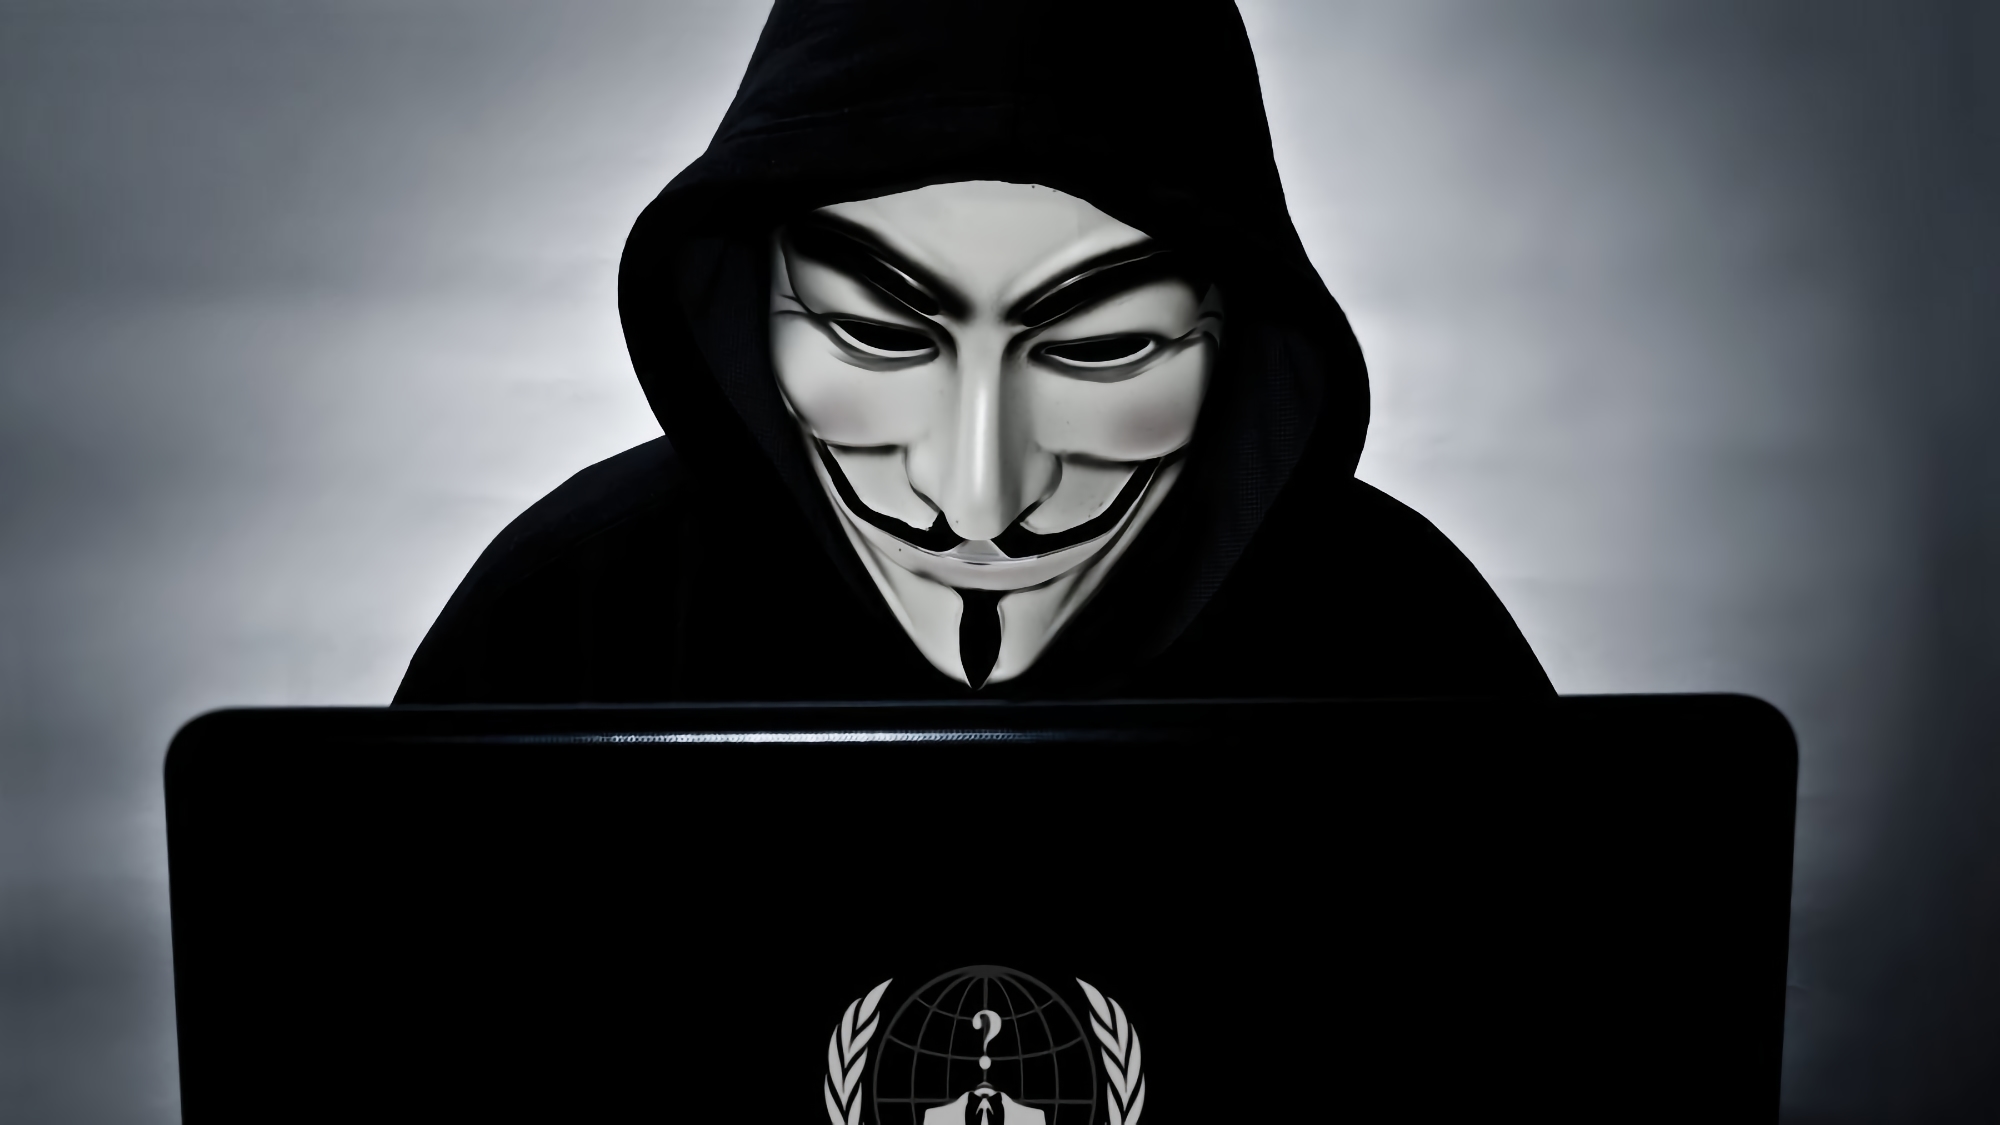 Anonimowy przyznał się do zhakowania rosyjskiego hostingu wideo RuTube